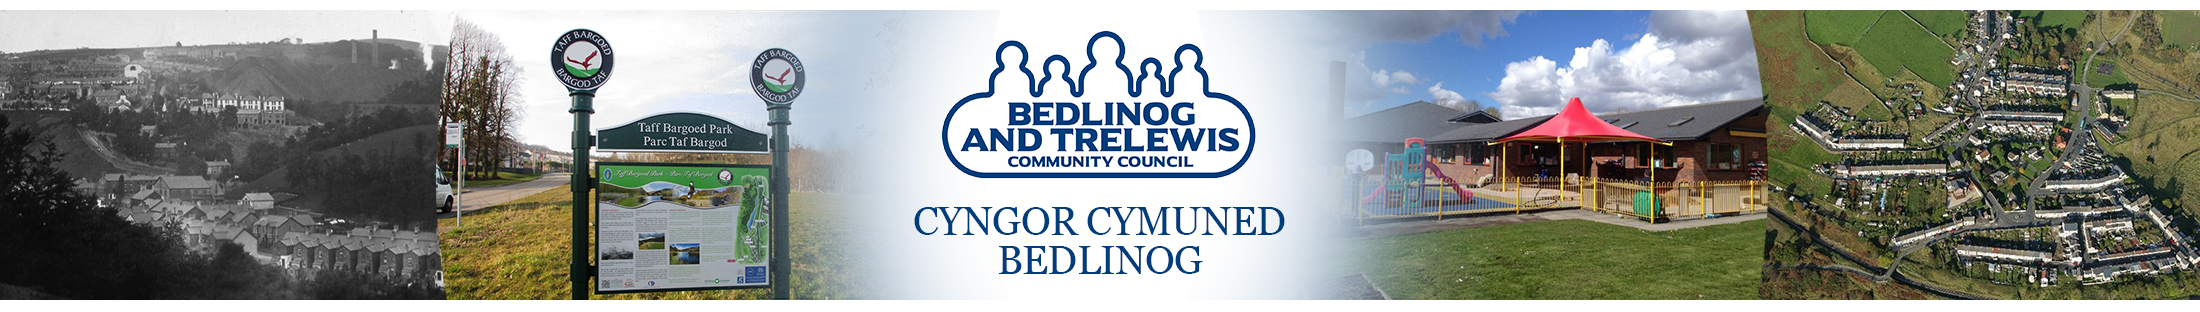 Header Image for Bedlinog Community Council